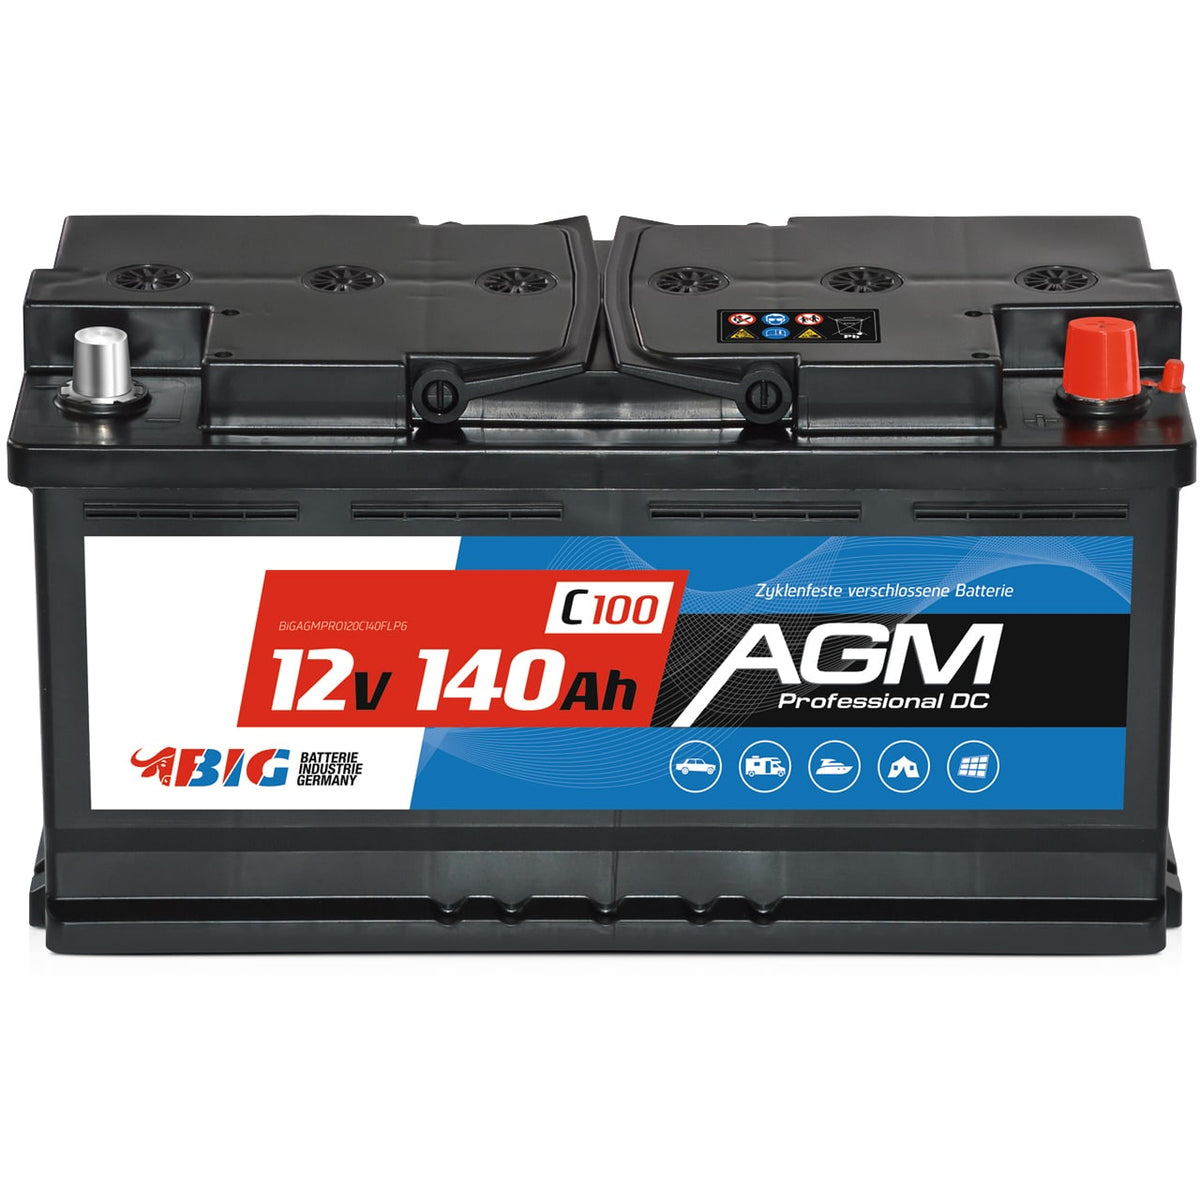 BIG Professional AGM 12V 140Ah C100